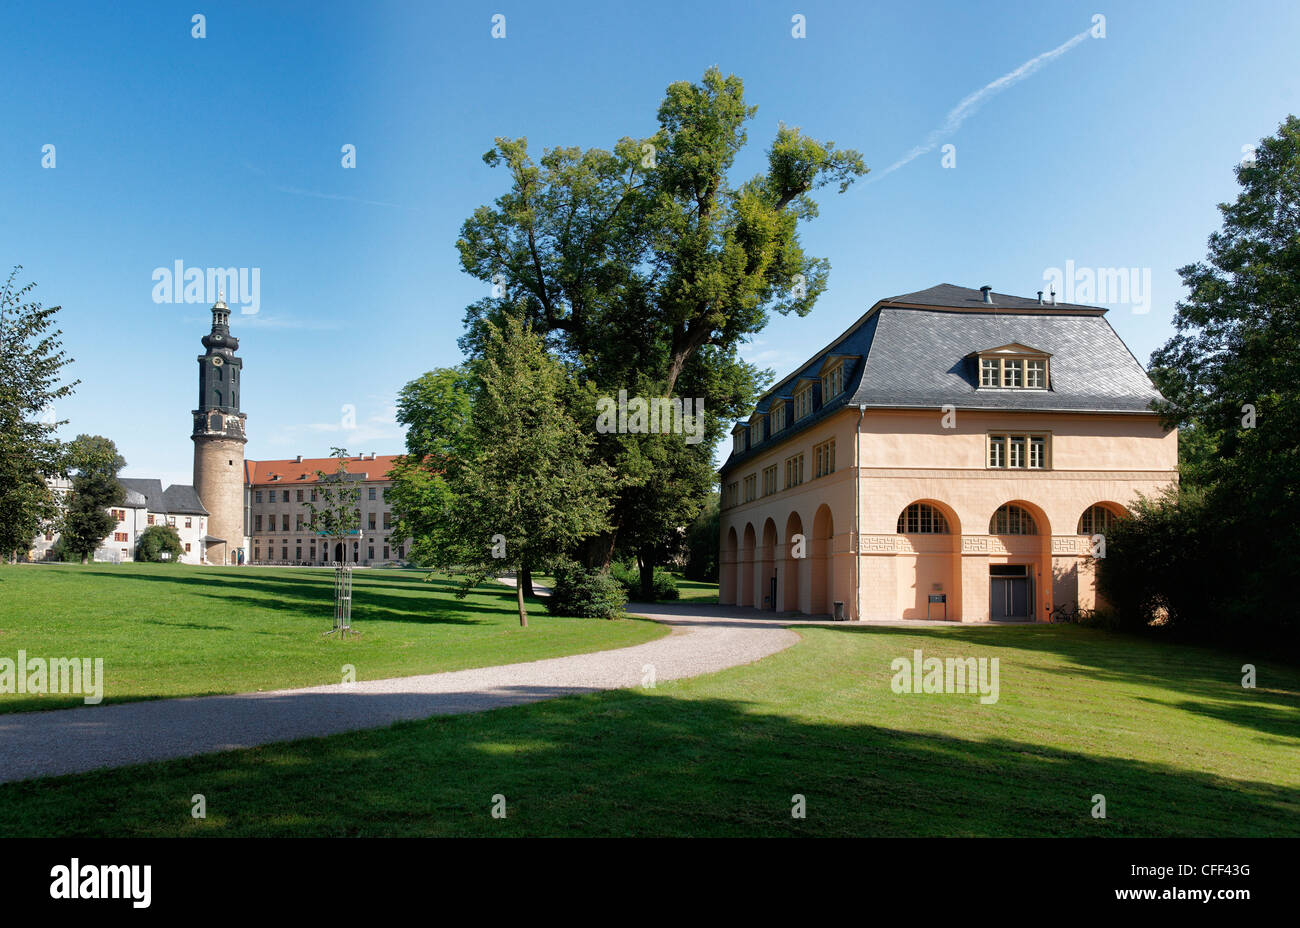 Château de ville, site du patrimoine mondial de l'UNESCO, Park an der Ilm, Weimar, Thuringe, Allemagne Banque D'Images